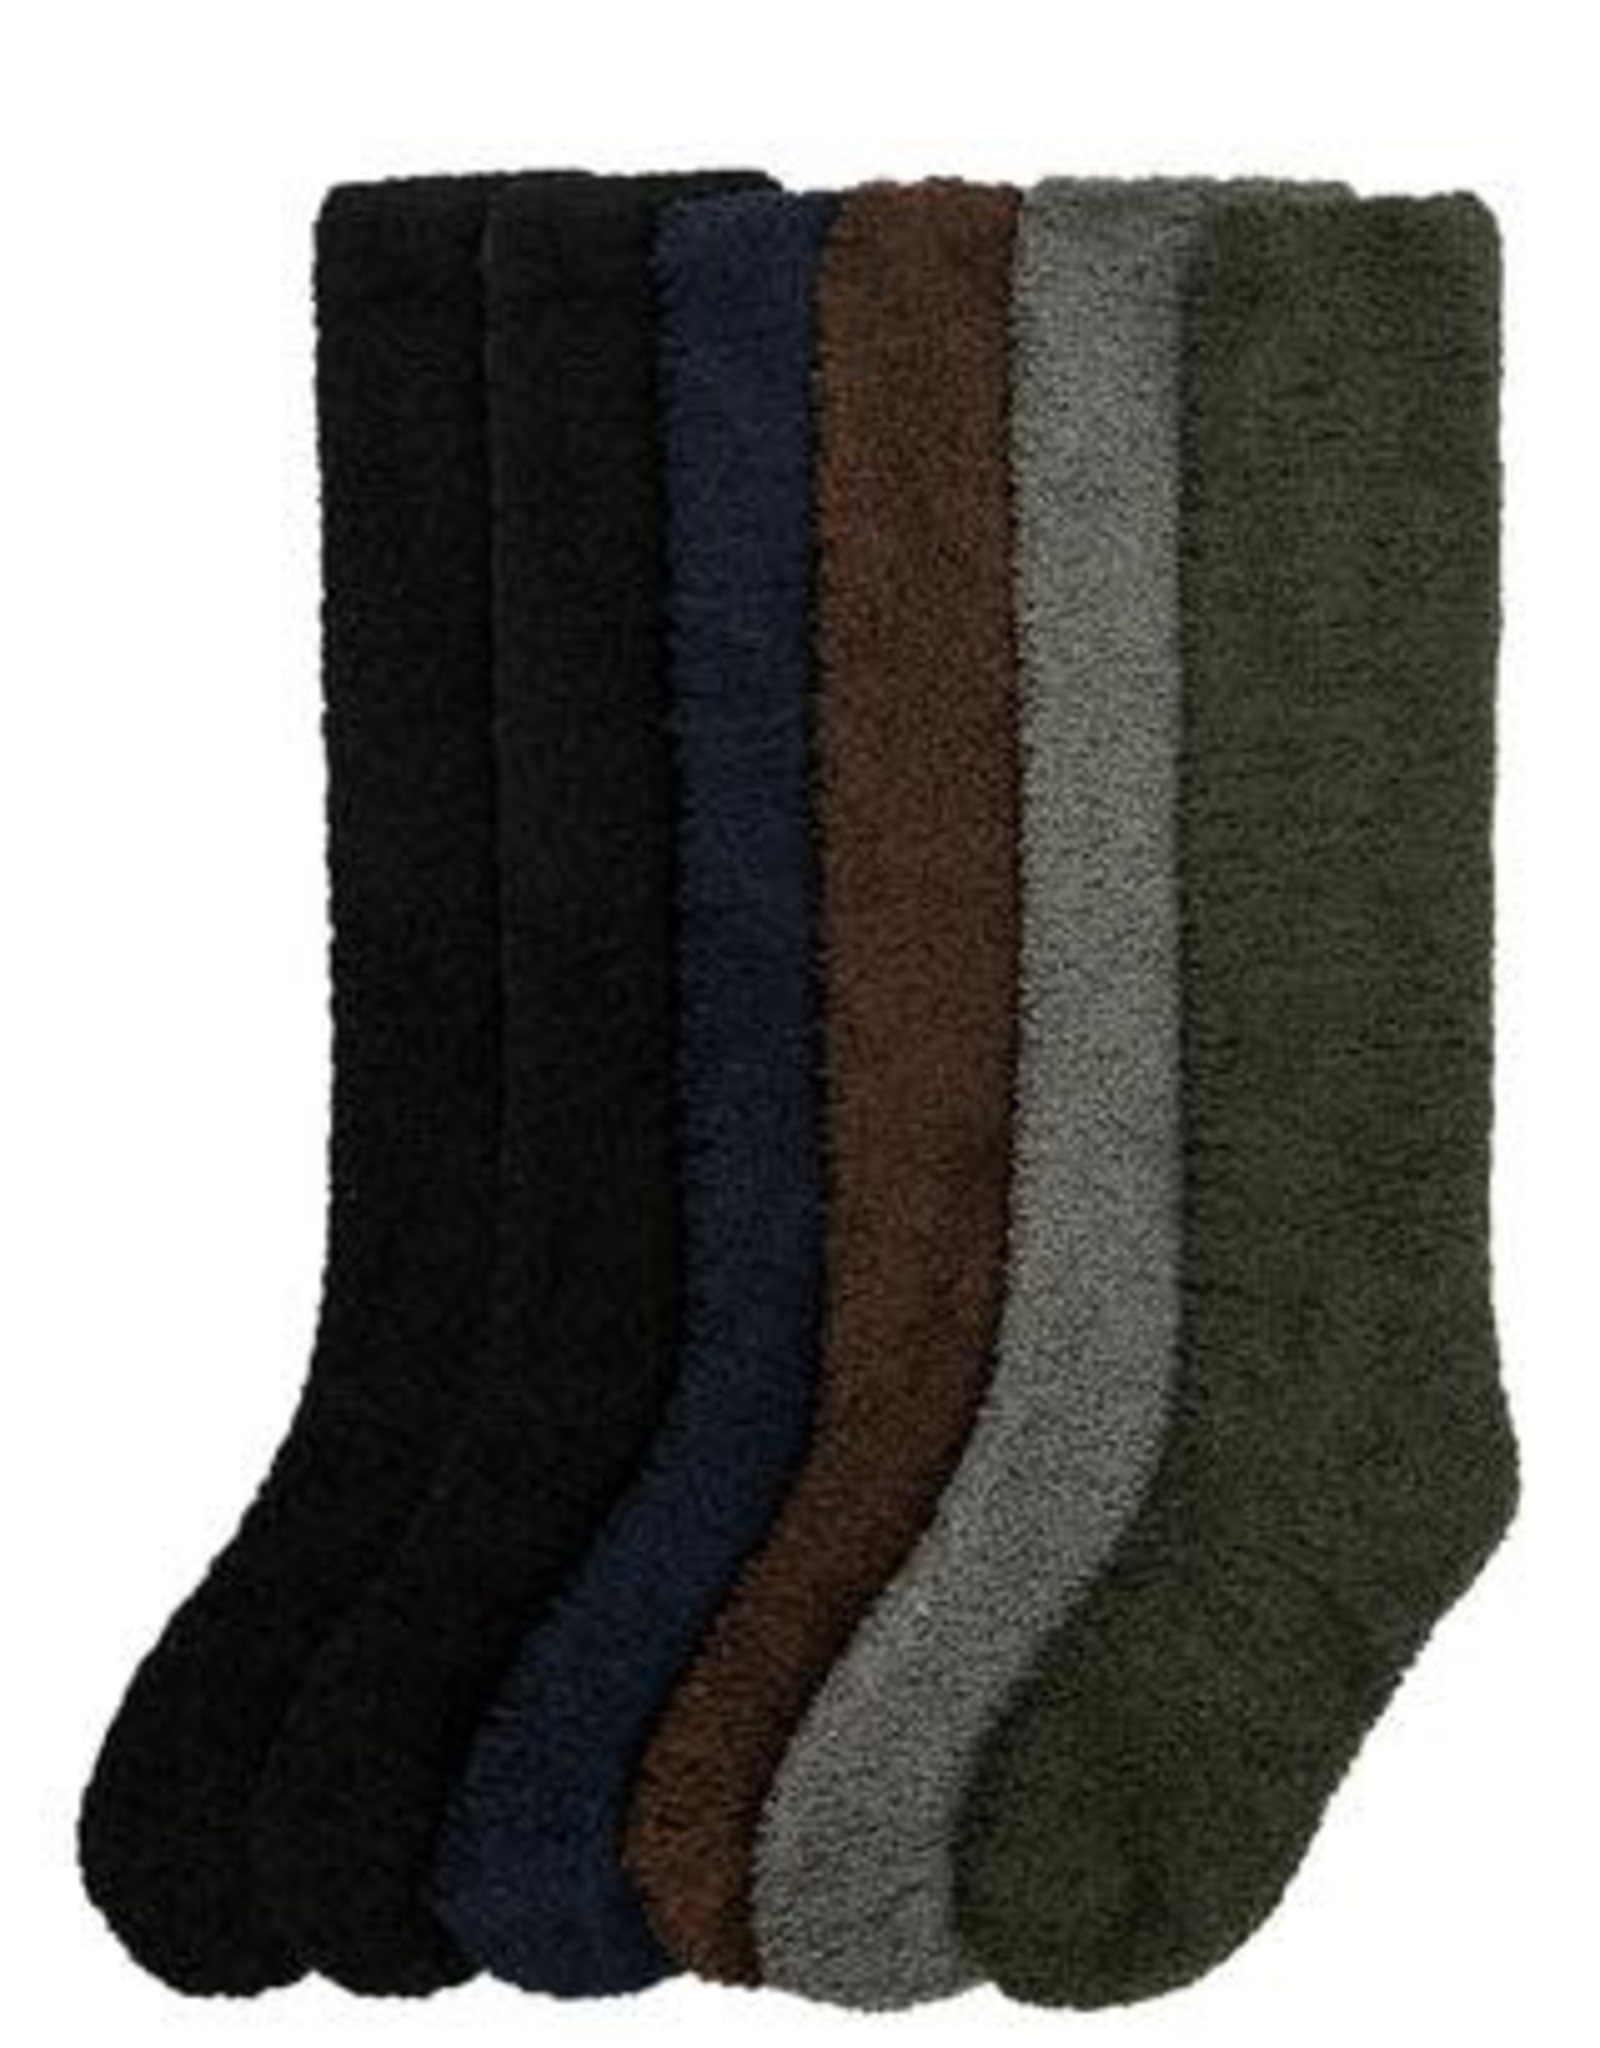 Plush soft warm Knee High Socks